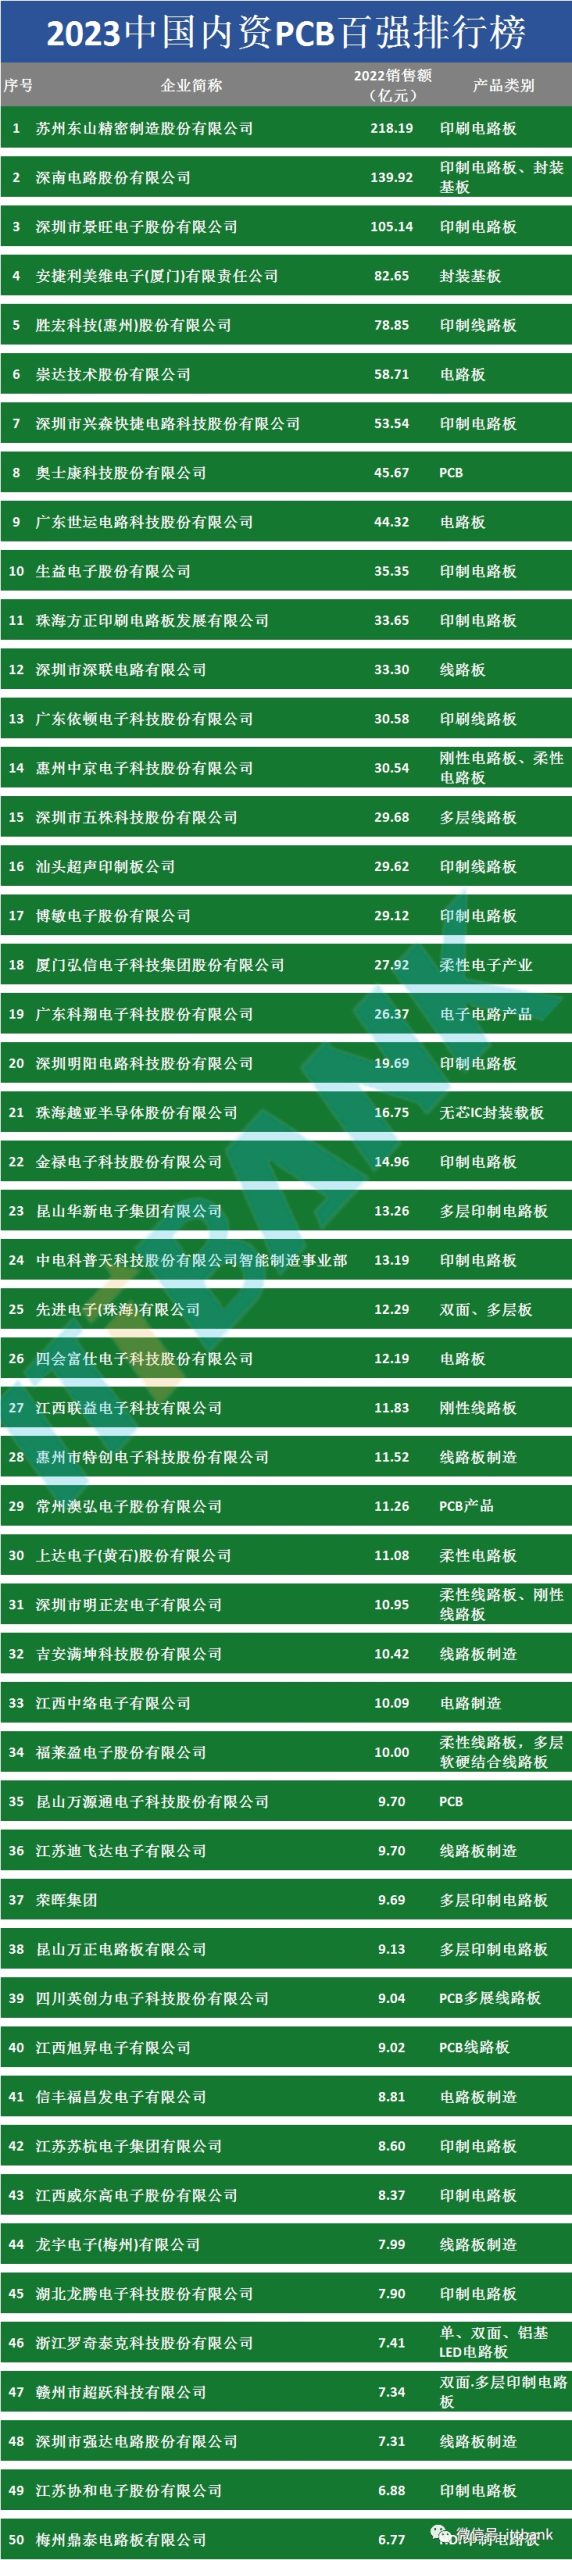 2023中国内资PCB百强企业排行榜1-50